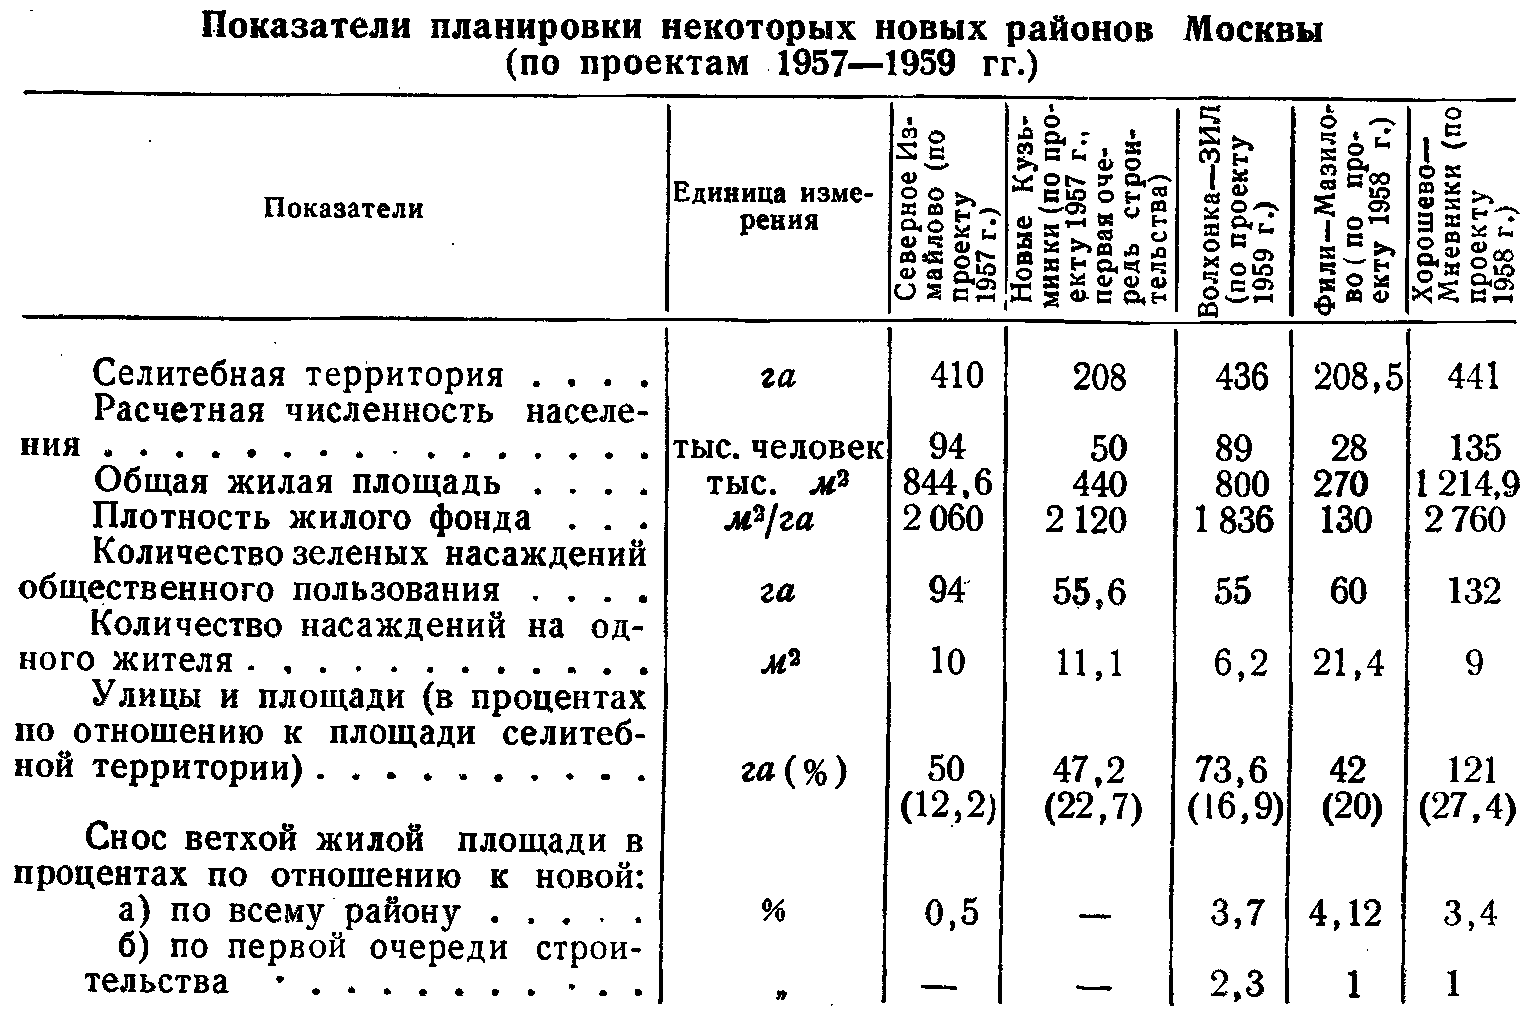 Показатели планировки некоторых новых районов Москвы (по проектам 1957—1959 гг.)